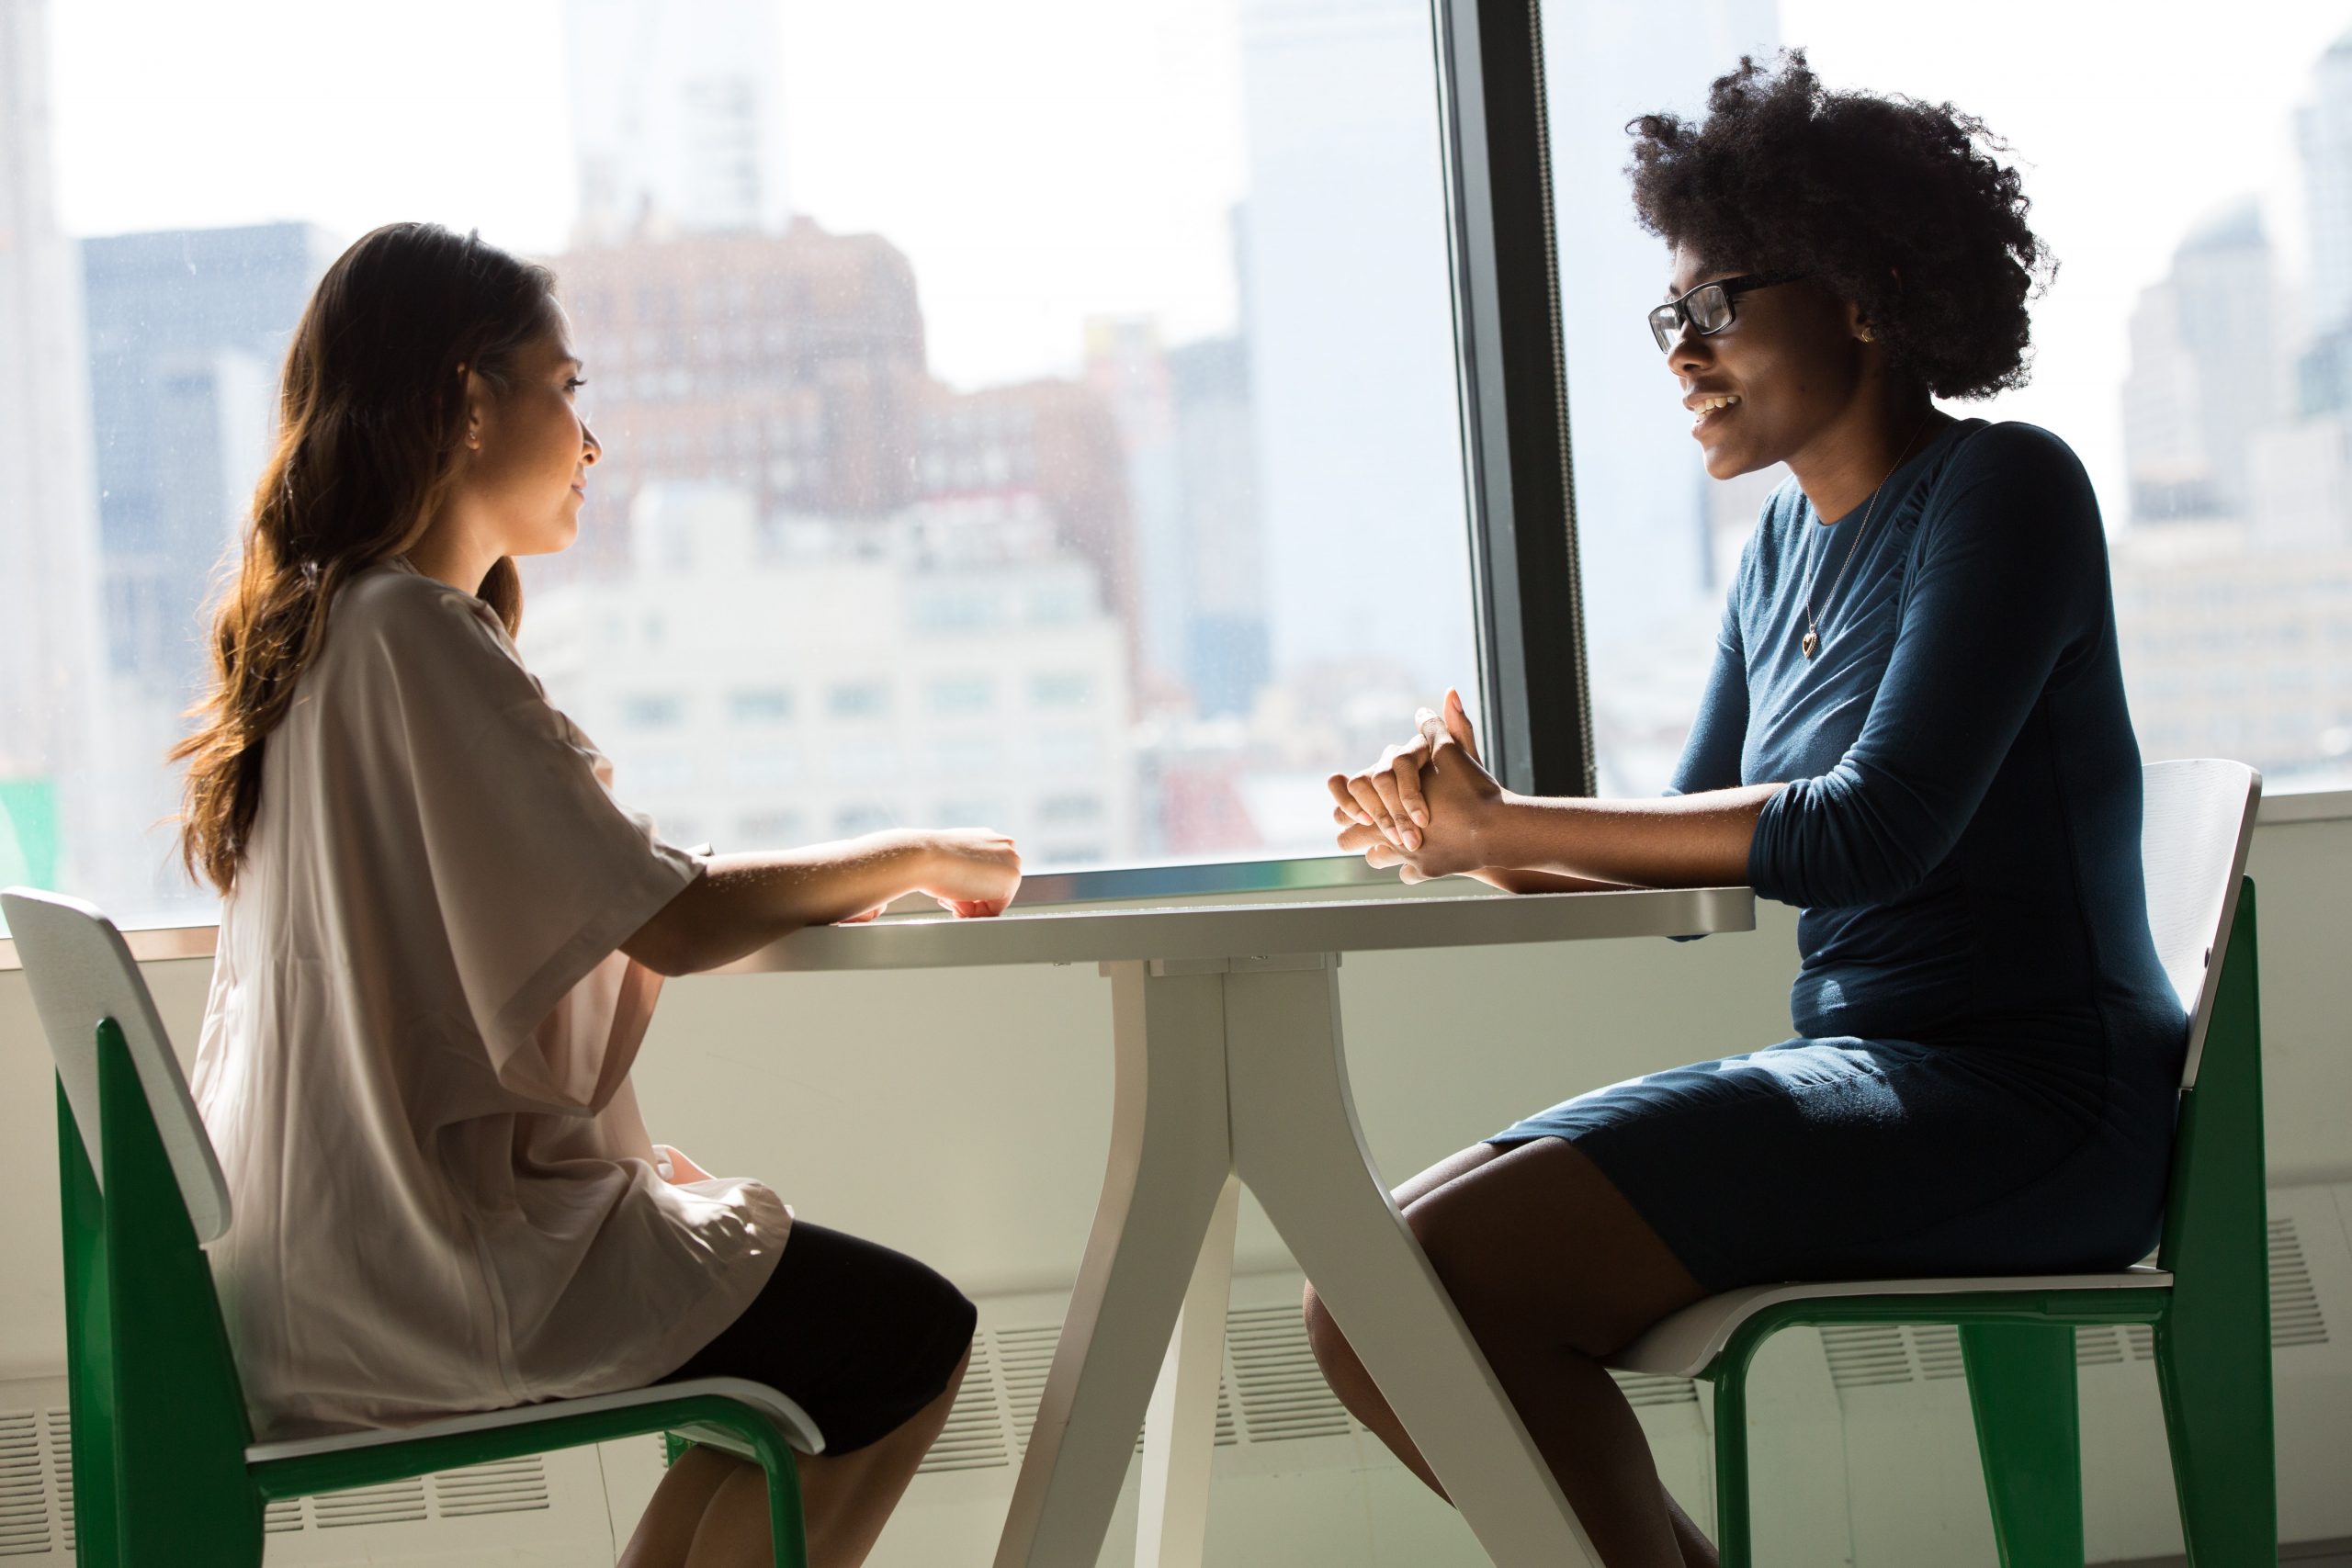 Deux femmes passent un entretien à une table dans le cadre des services d'acquisition de talents et de recrutement chez Jarvis.